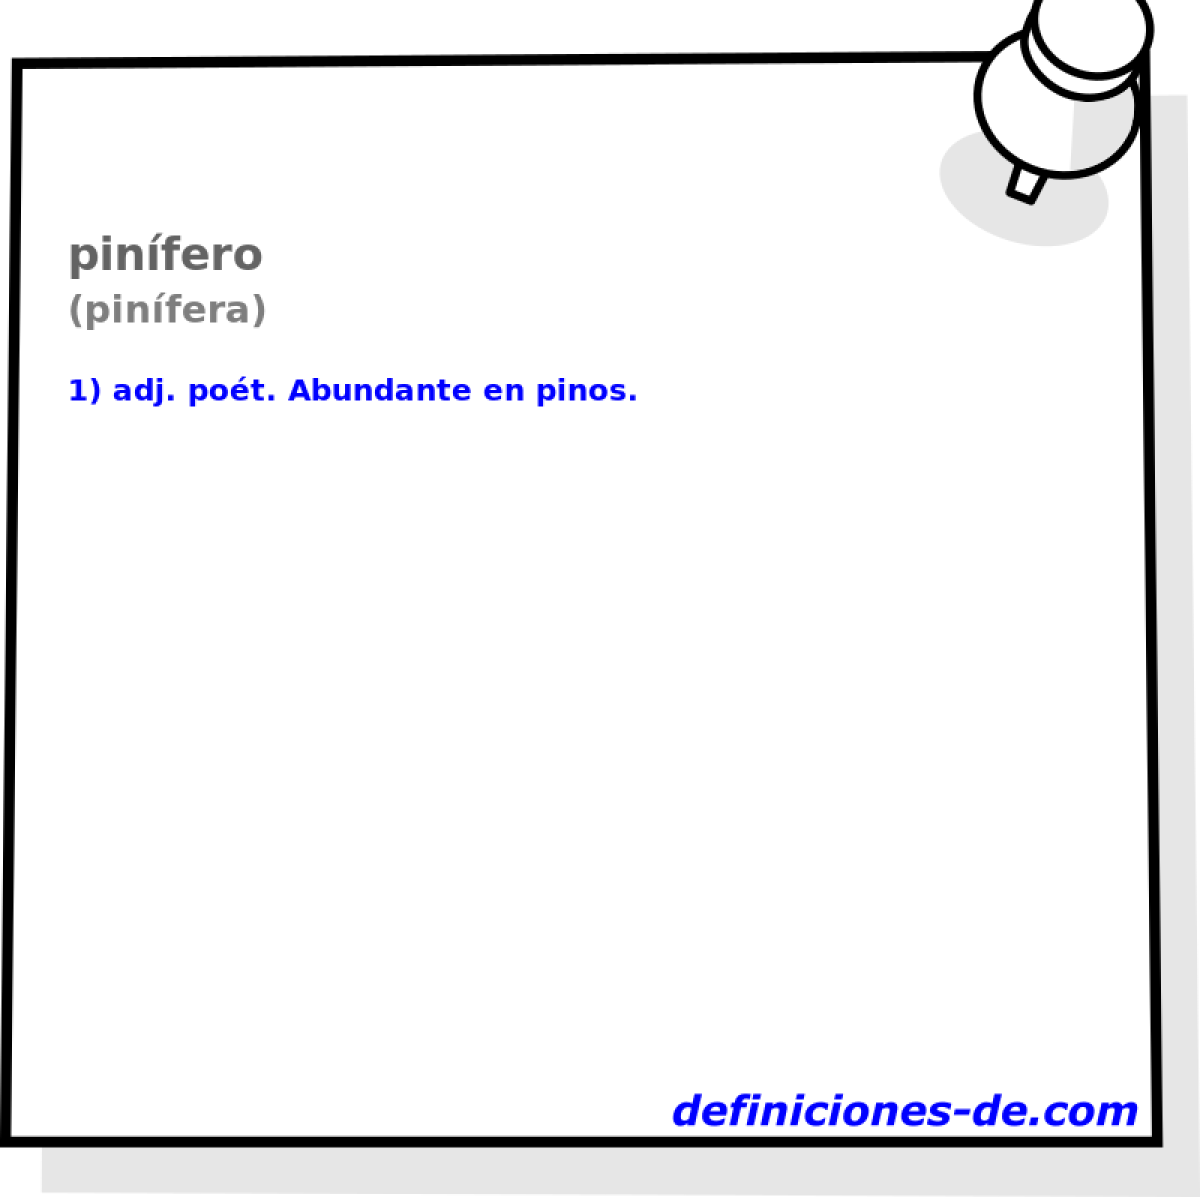 pinfero (pinfera)